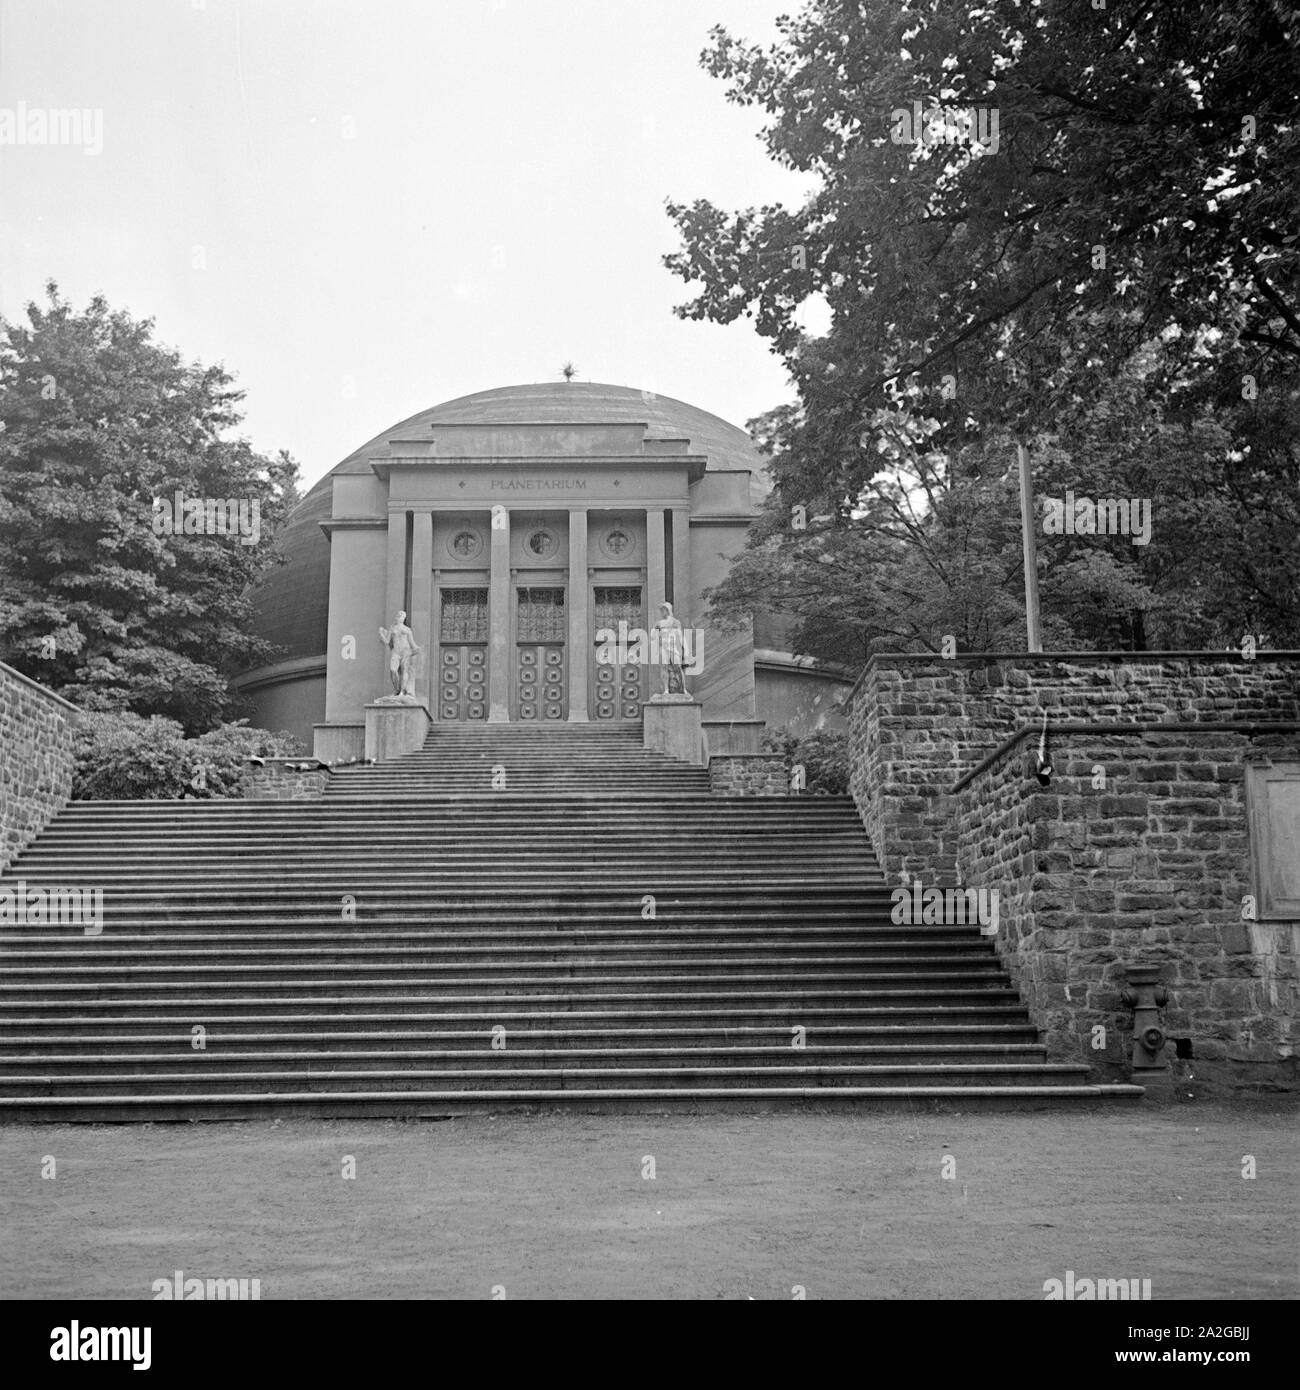 Das Planetarium in Wuppertal Barmen war das erste Planetarium weltweit, Deutschland 1930er Jahre. World's first planetarium at Wuppertal Barmen, Germany 1930s. Stock Photo